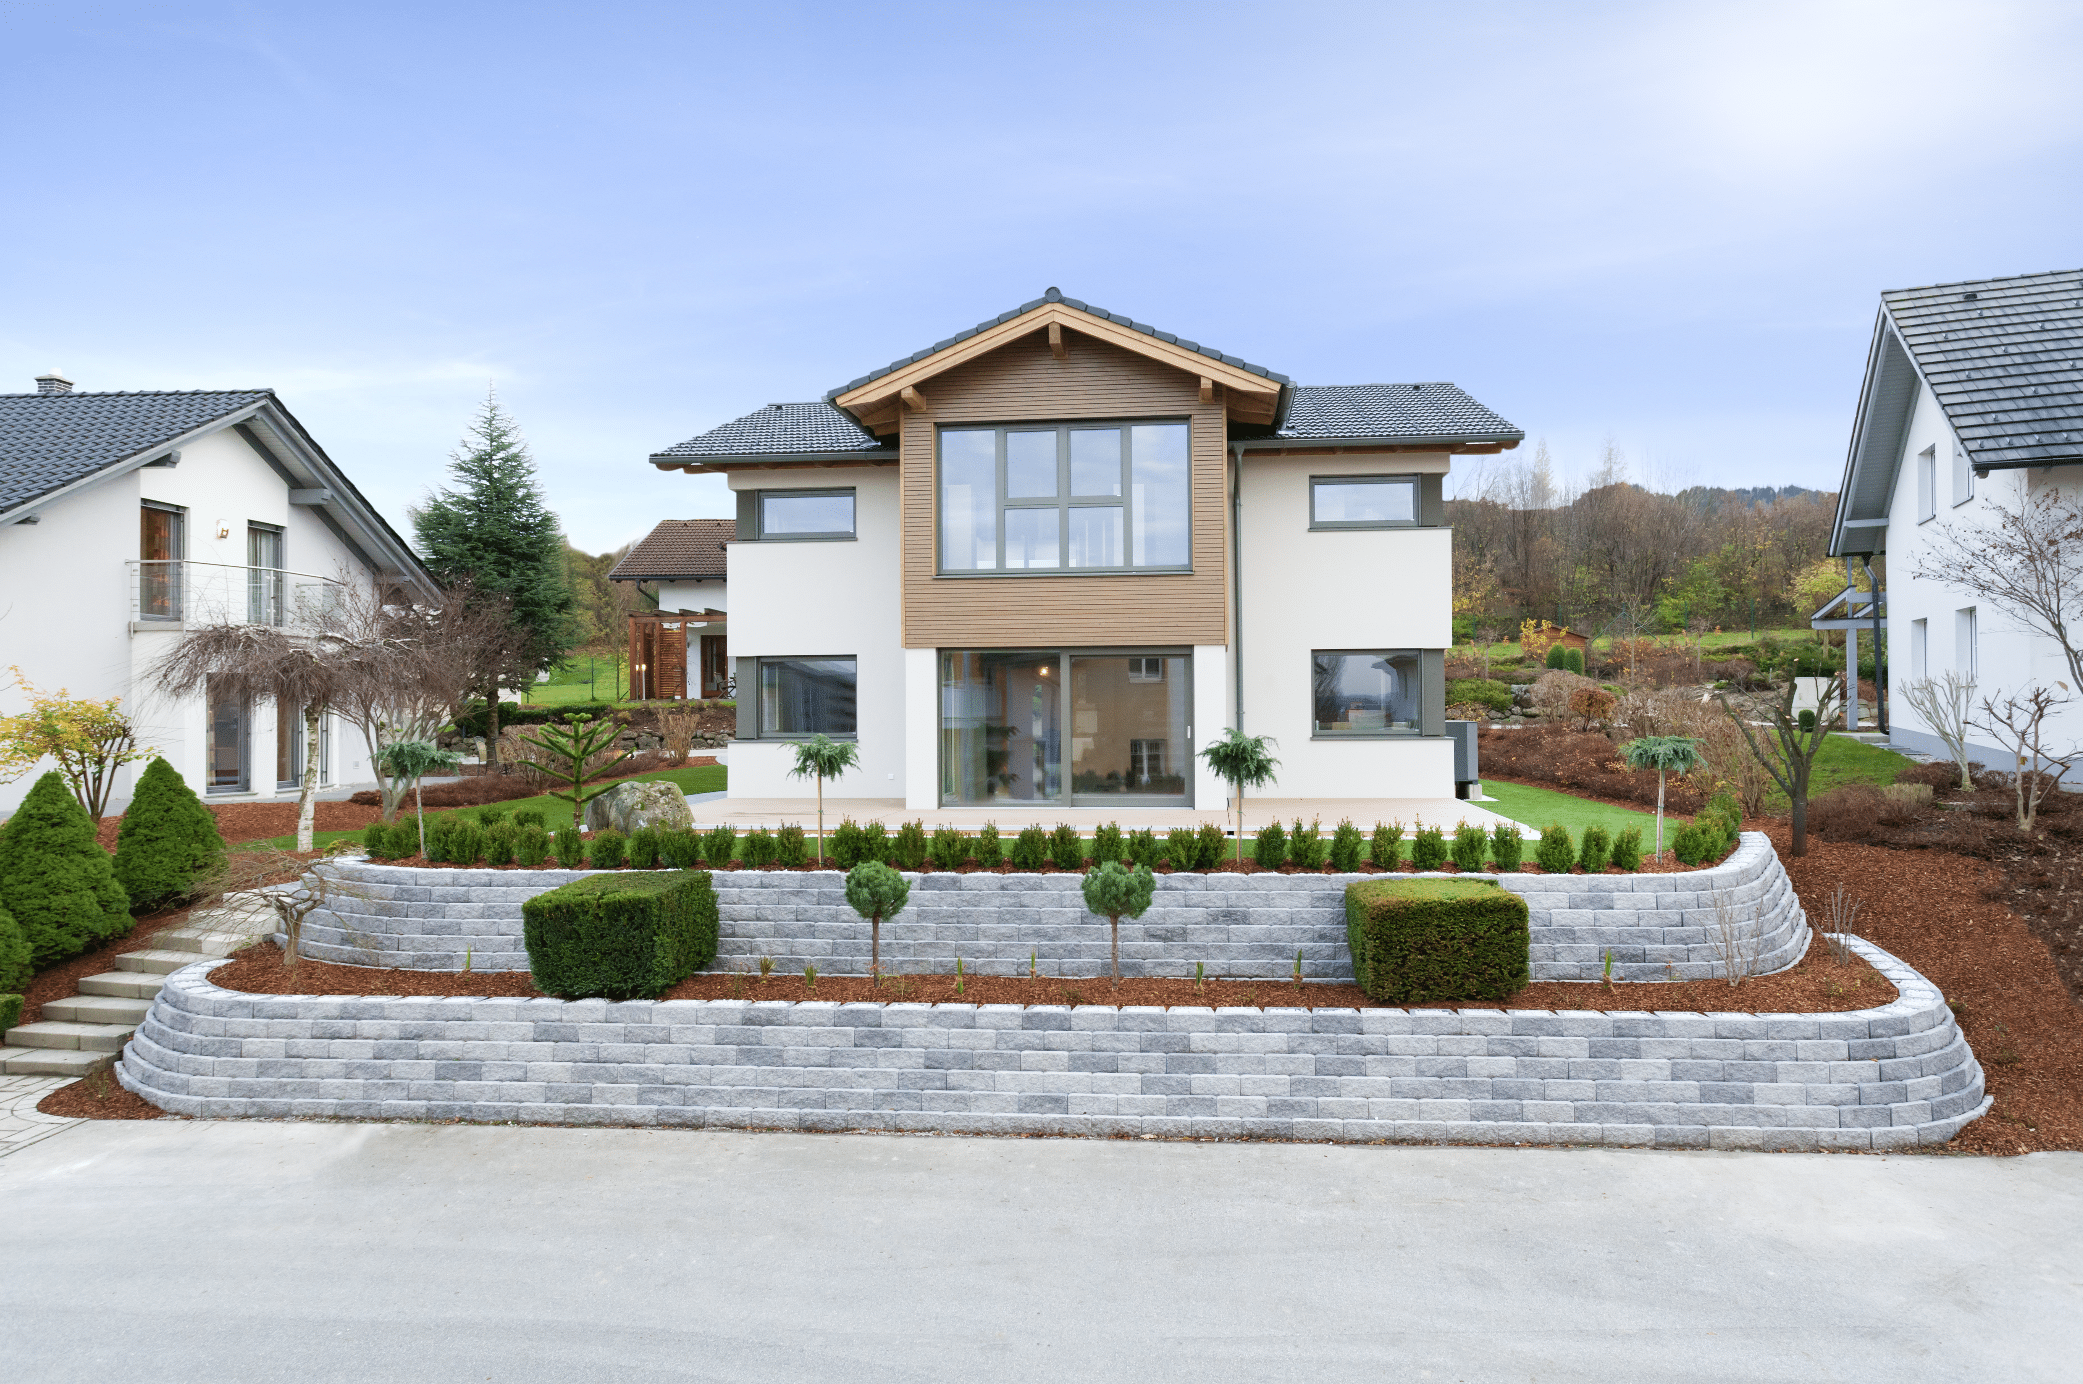 Hartl Haus zeigt ein helles Einfamilienhaus mit Holzverkleidung, Terrasse und gepflegtem Vorgarten mit Stufen und Zugang zum Haus aus Steinplatten.